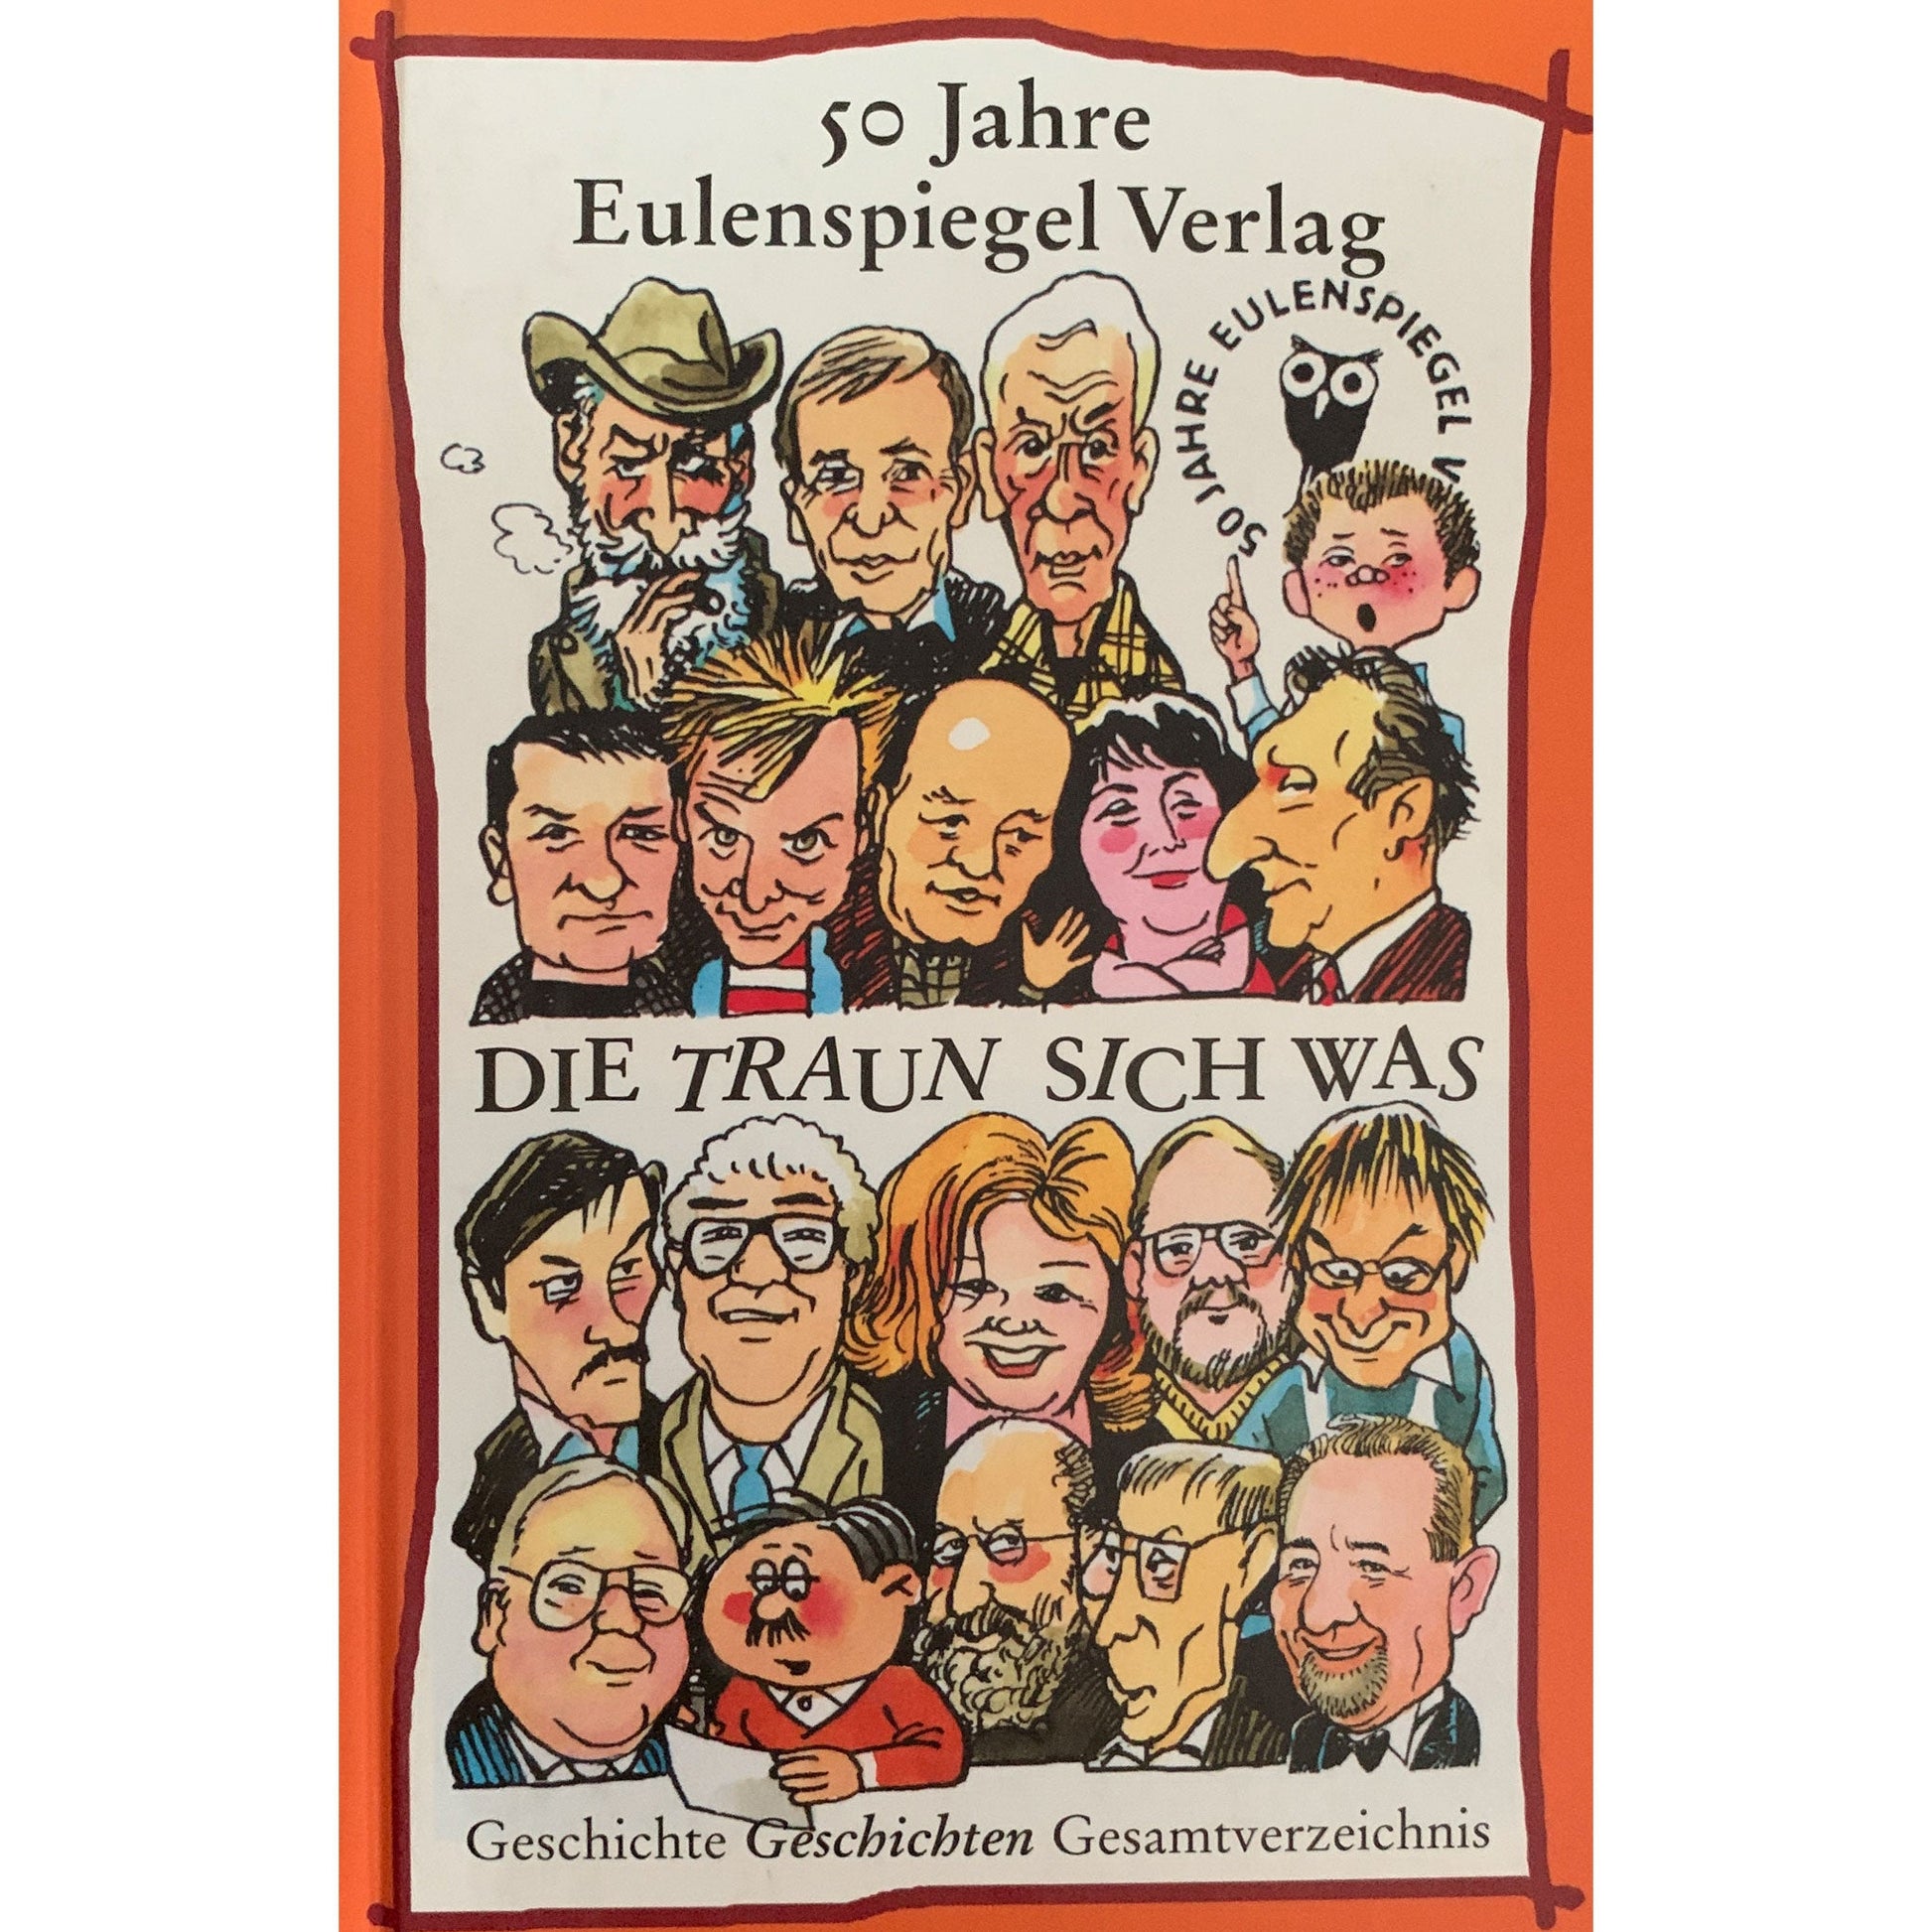 50 Jahre Eulenspiegel Verlag - Die traun sich was